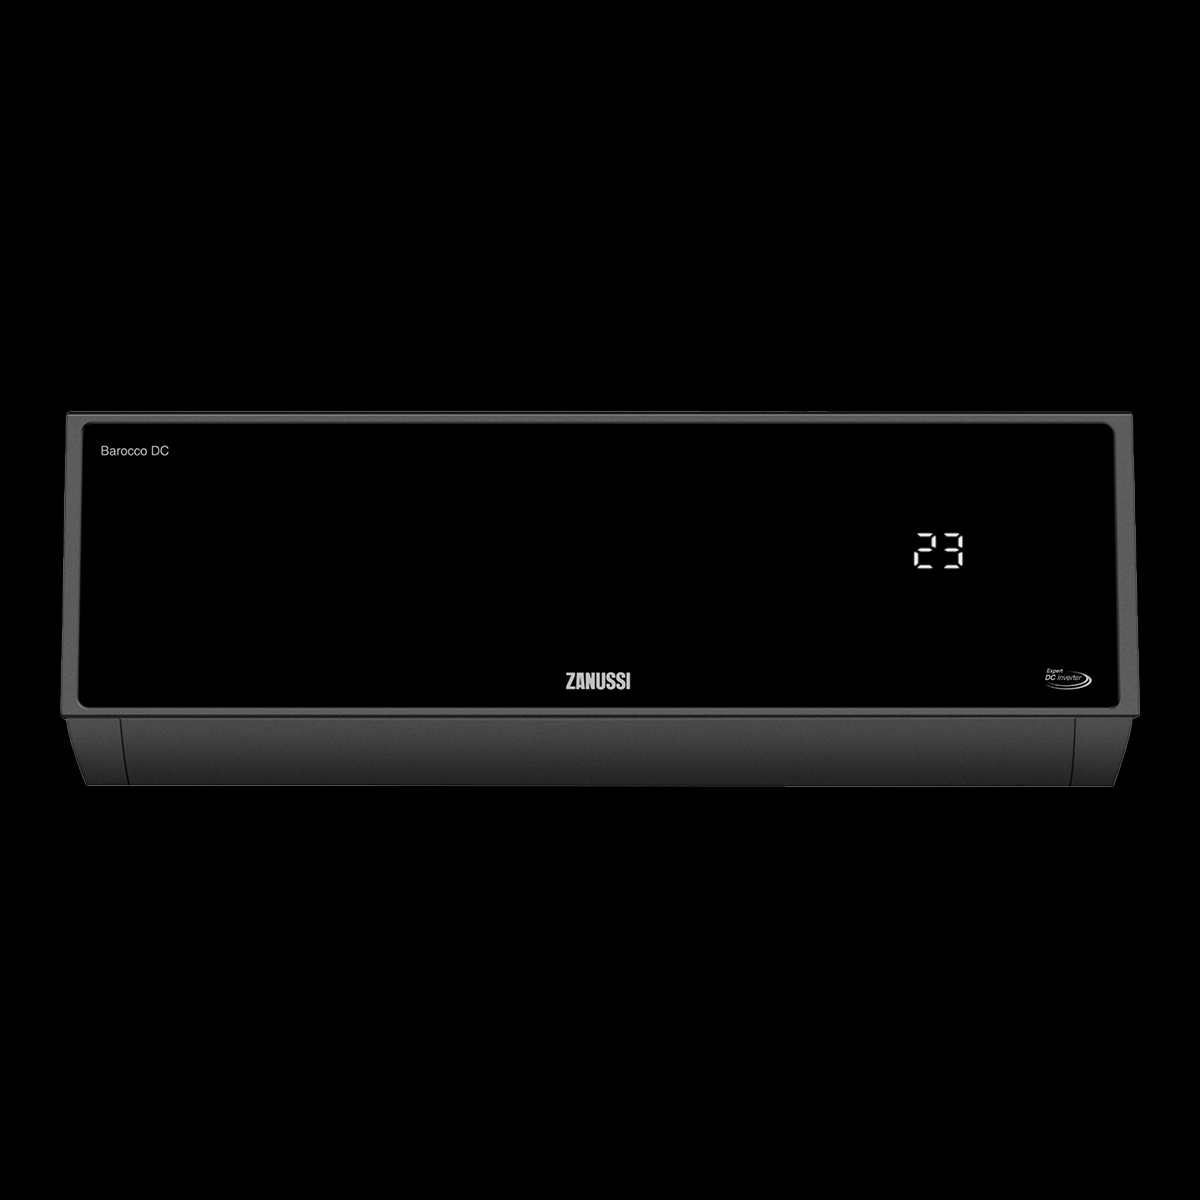 Товарная страница Zanussi Barocco DC Inverter Black ZACS/I-09 HB-Black/A23/N8